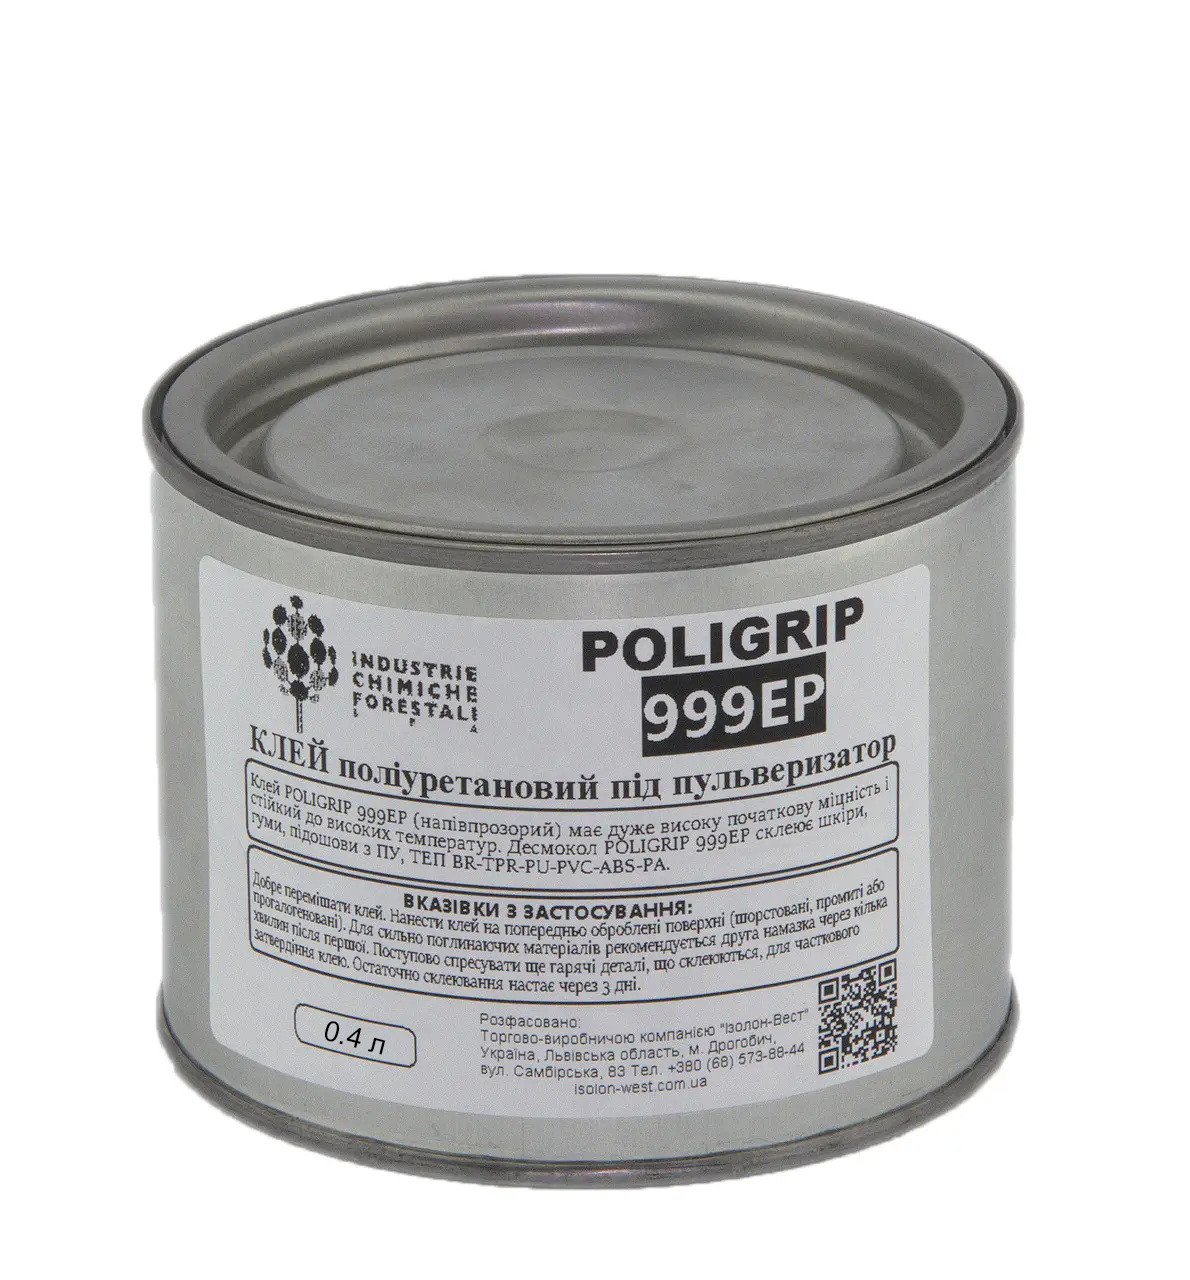 Клей Poligrip 999 EP (під пульверизатор) - поліуретановий клей з підвищеною термостійкістю, Італія детальна фотка